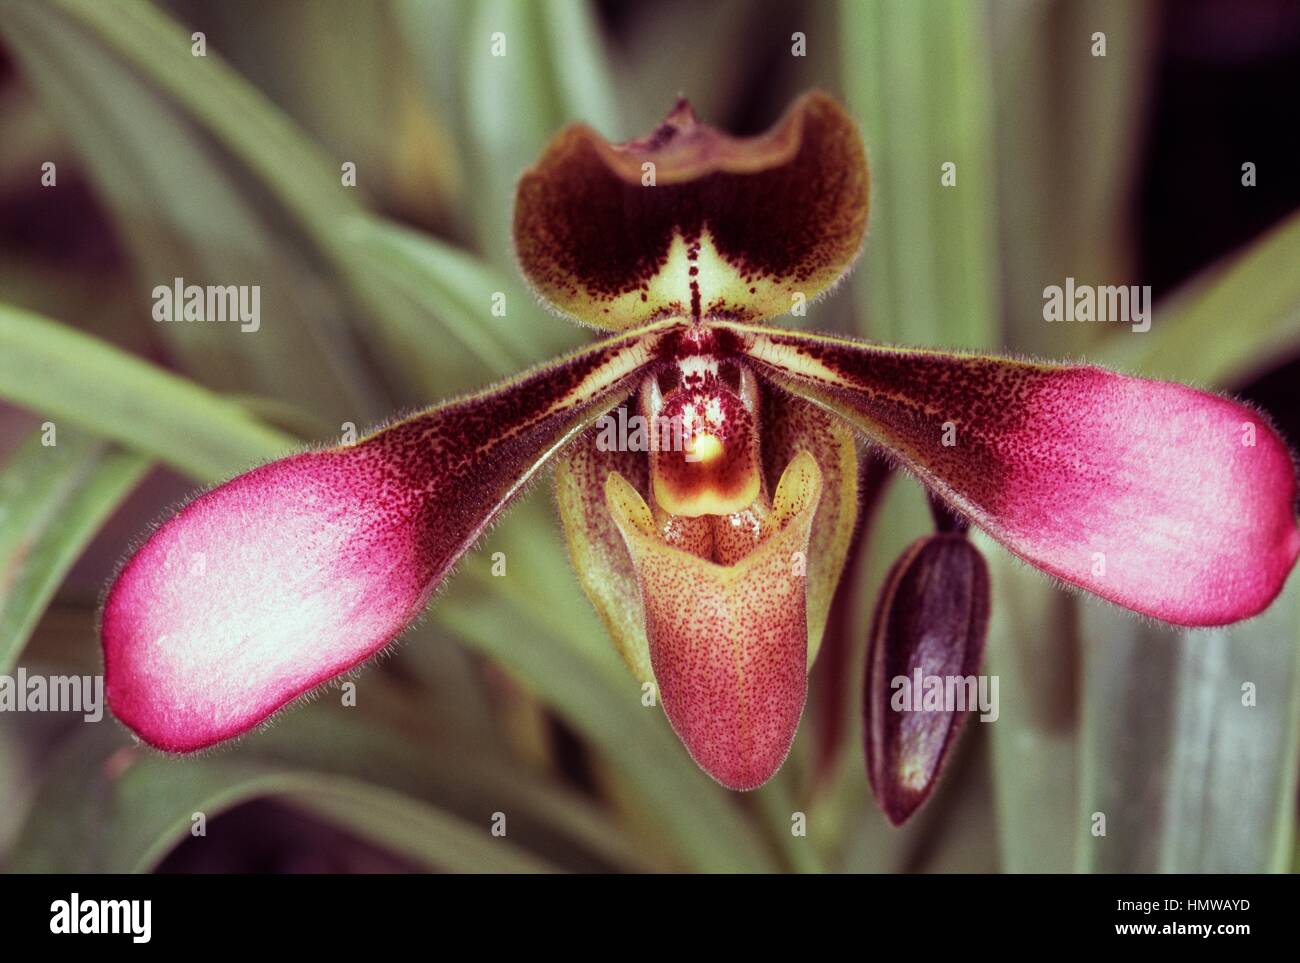 Paphiopedilum Pinocchio (Paphiopedilum glaucophyllum x Paphiopedilum primulinum), Orchidaceae. Stock Photo